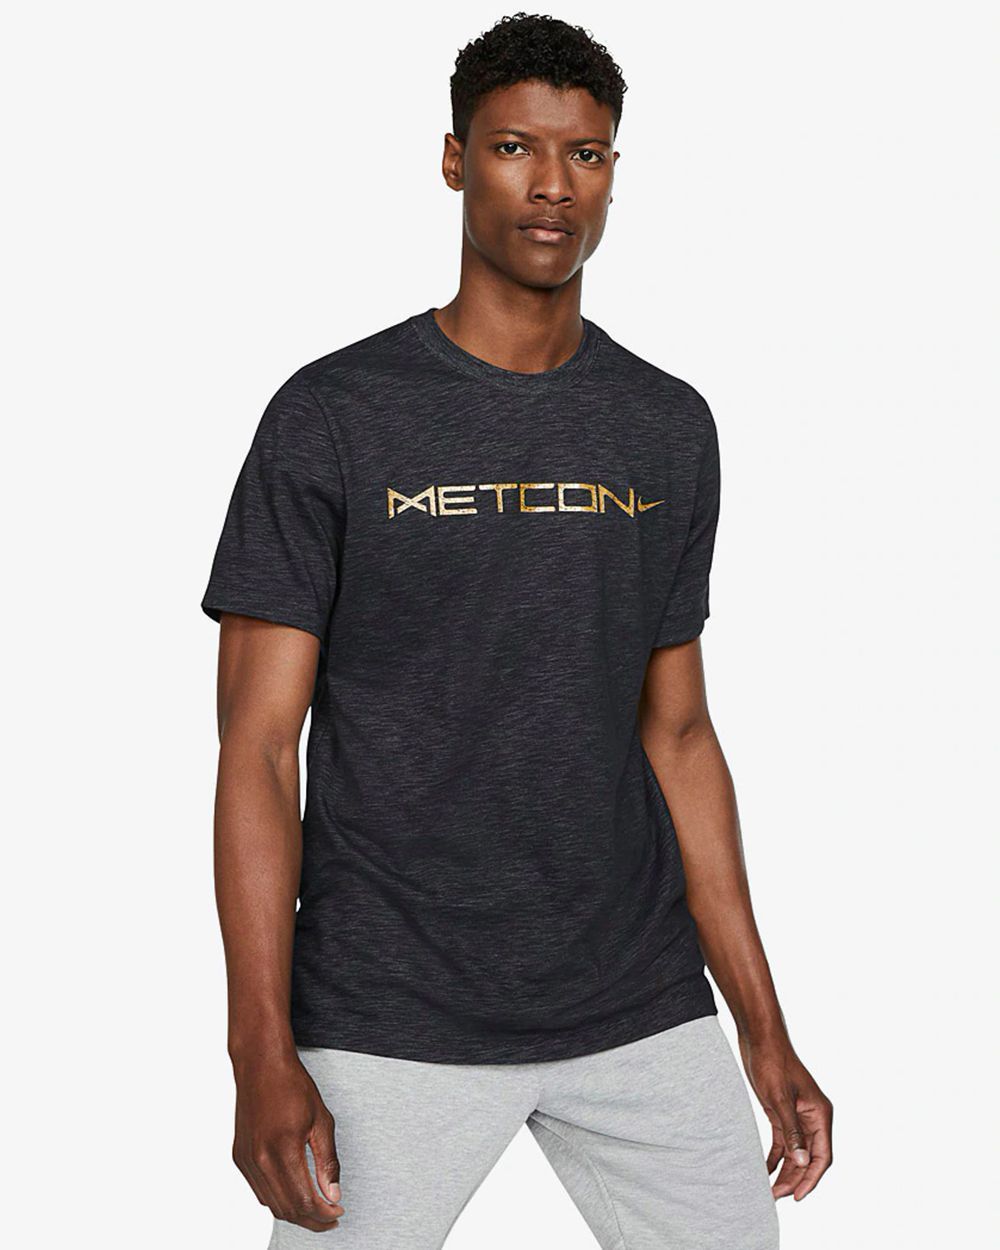 Nike Metcon Men Black Printed T-shirt 